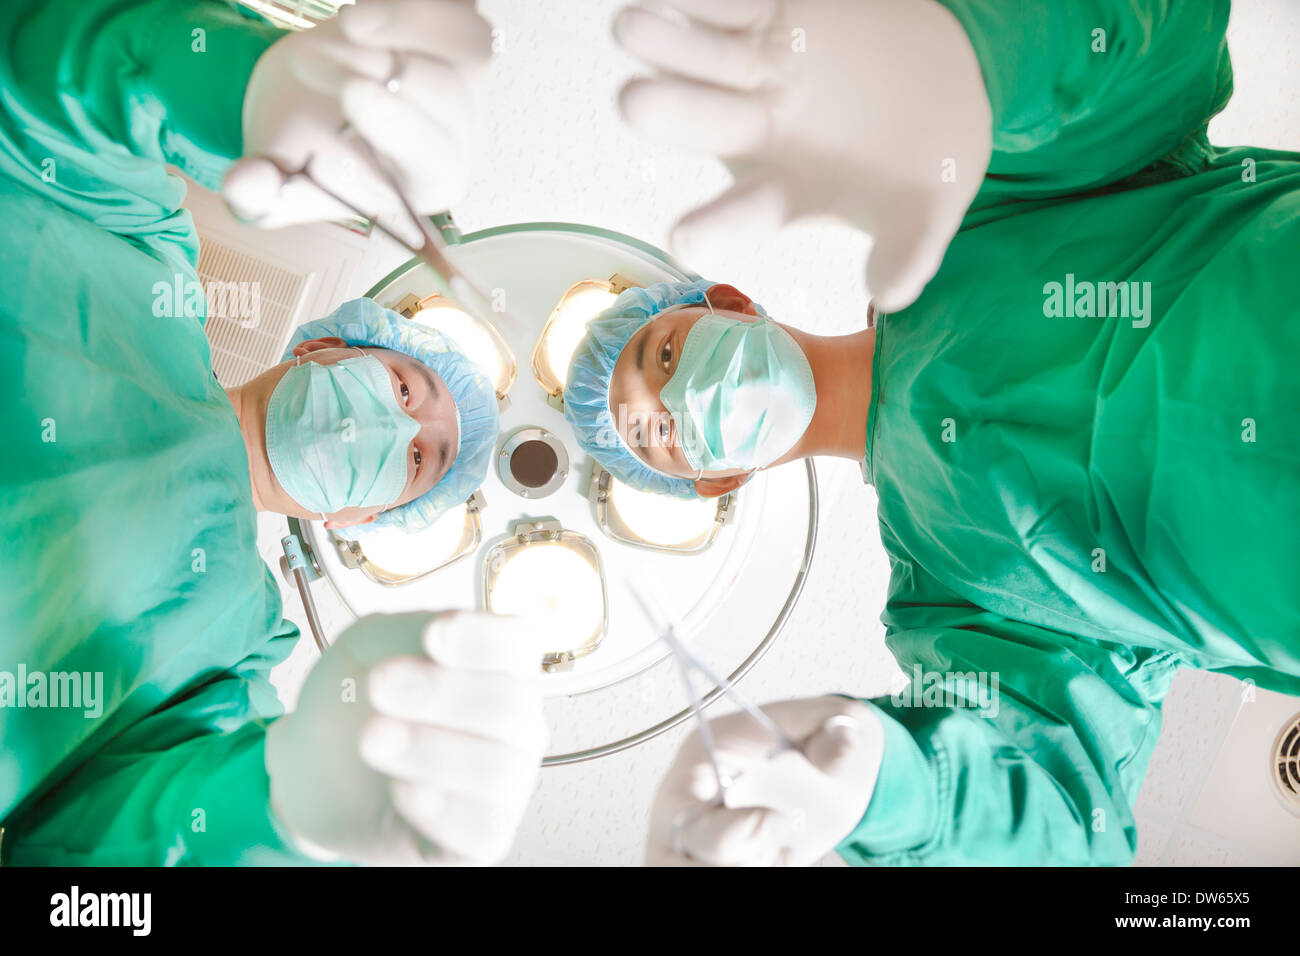 Chirurgen und medizinische Fachangestellte arbeiten im OP-Saal Stockfoto